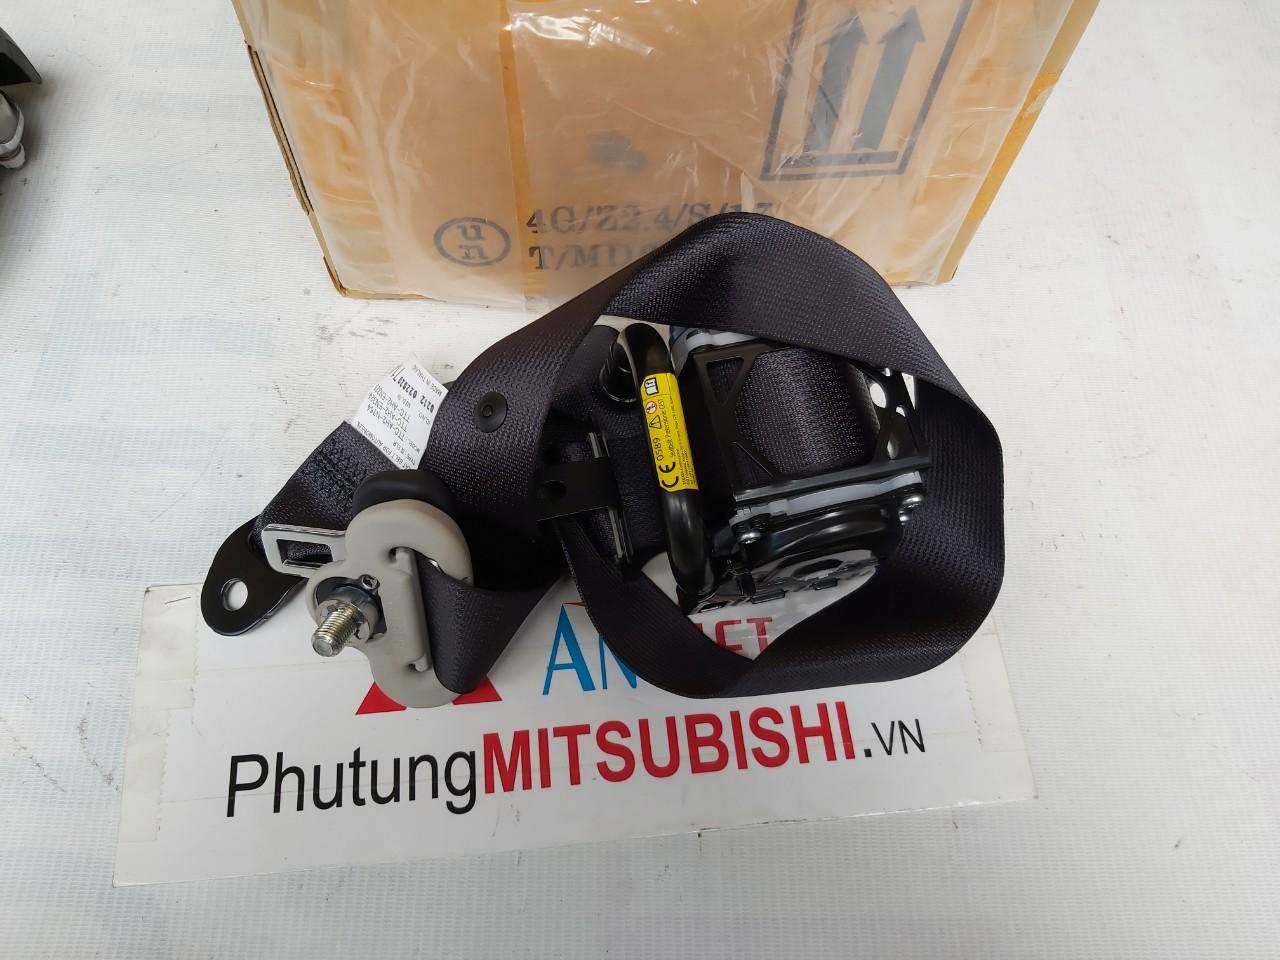 Dây đai an toàn ghế trước xe Mitsubishi Pajero Sport 2019